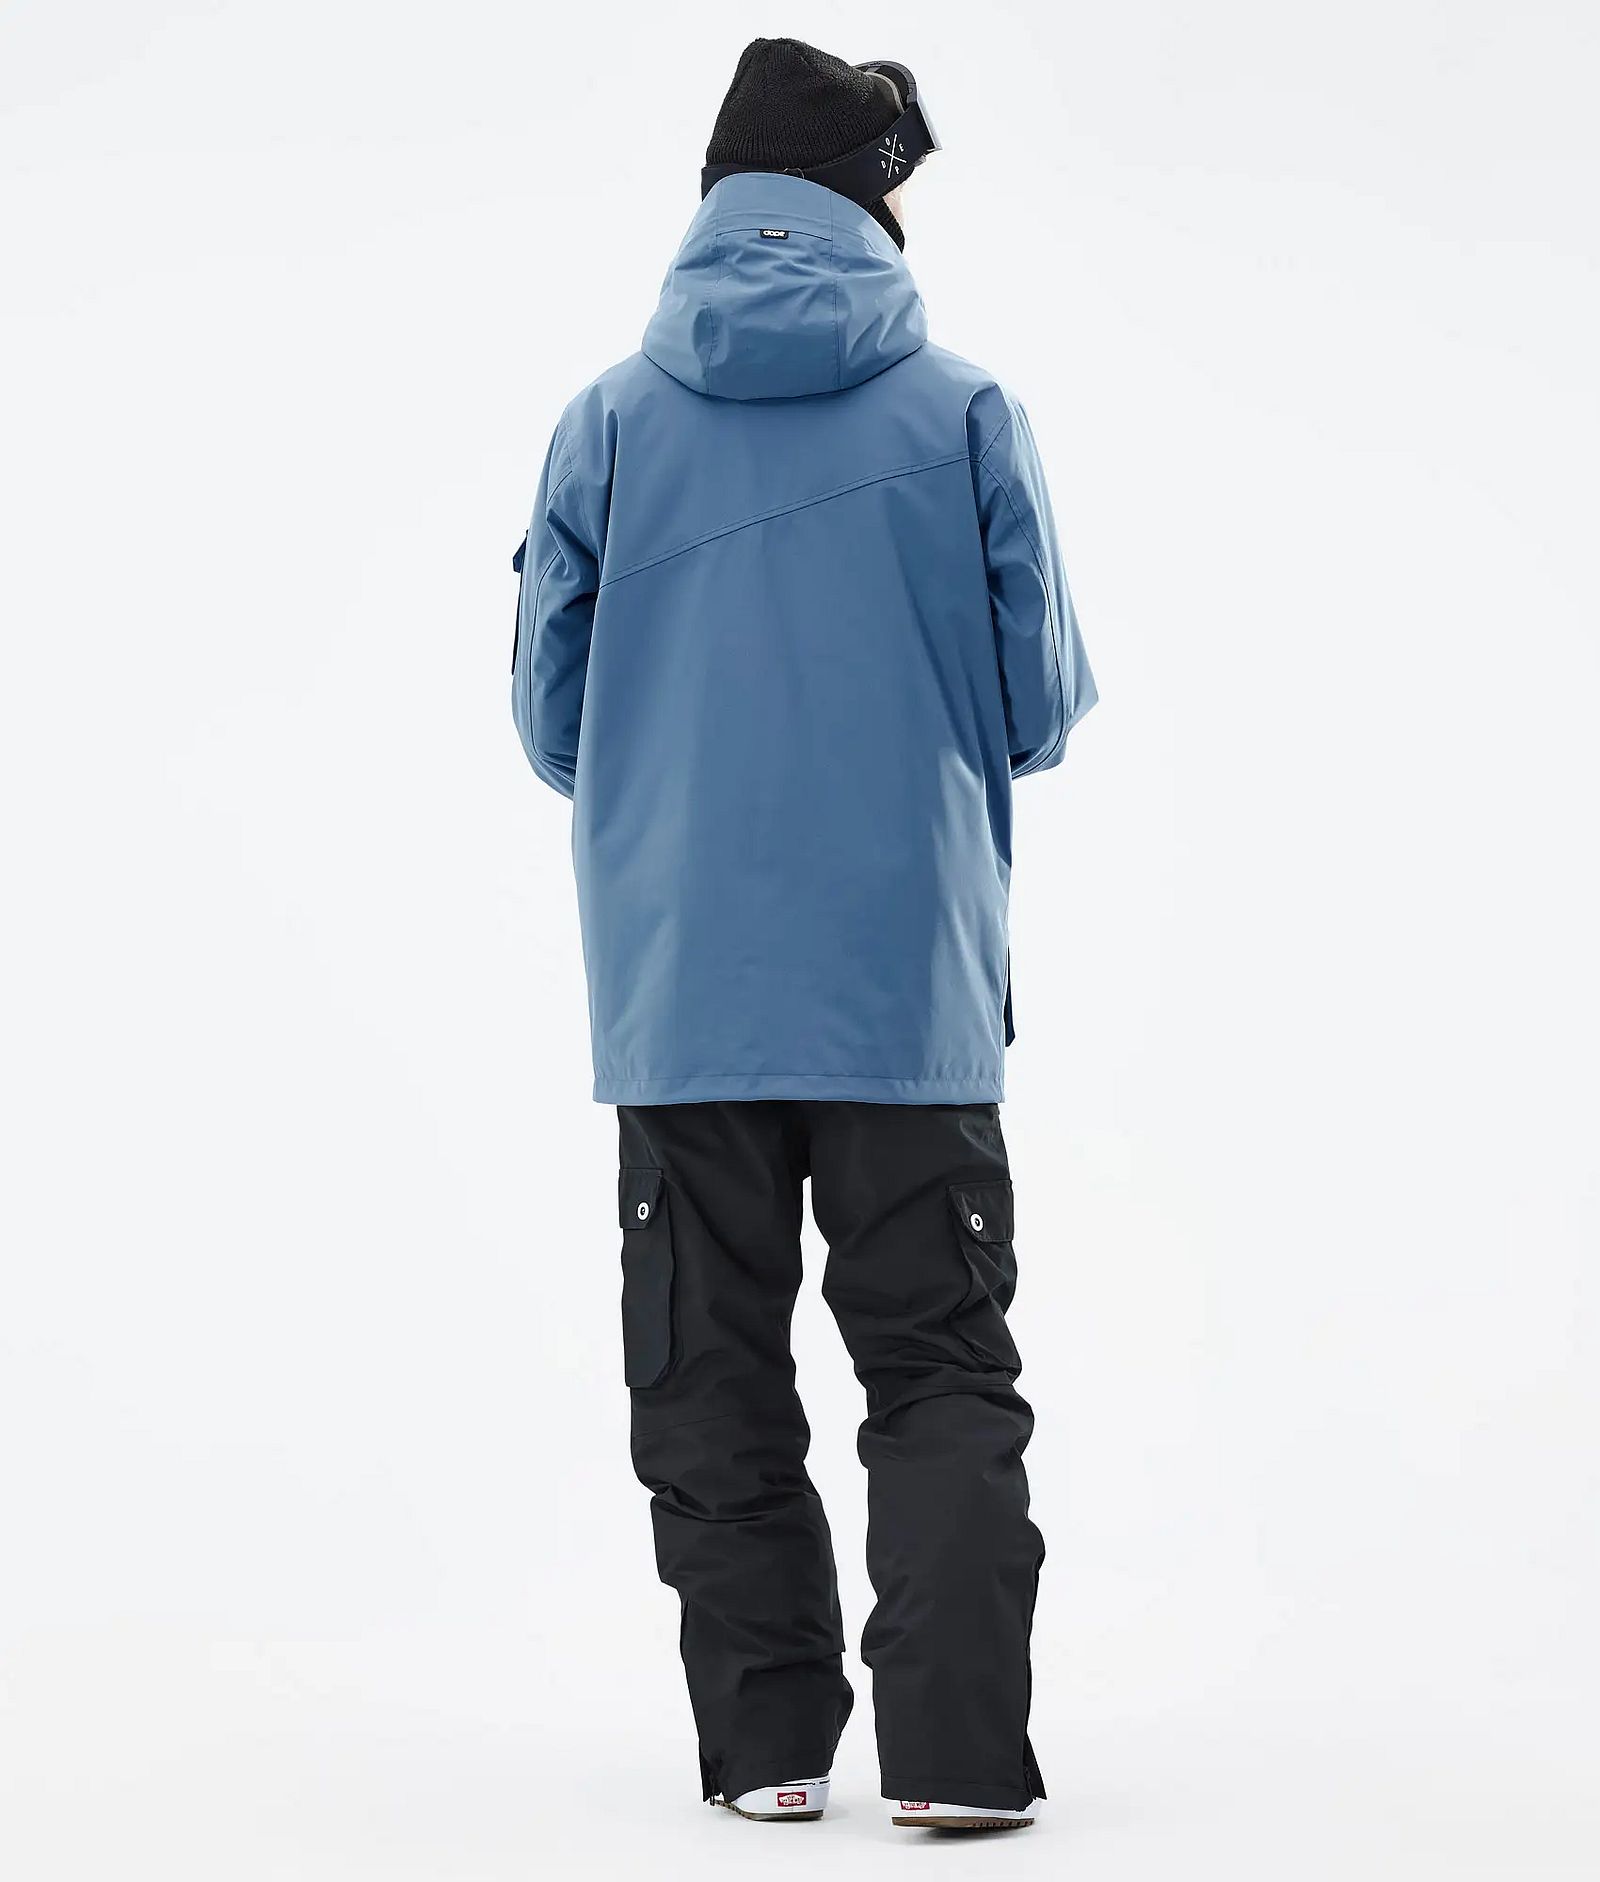 Adept Snowboardový Outfit Pánské Blue Steel/Black